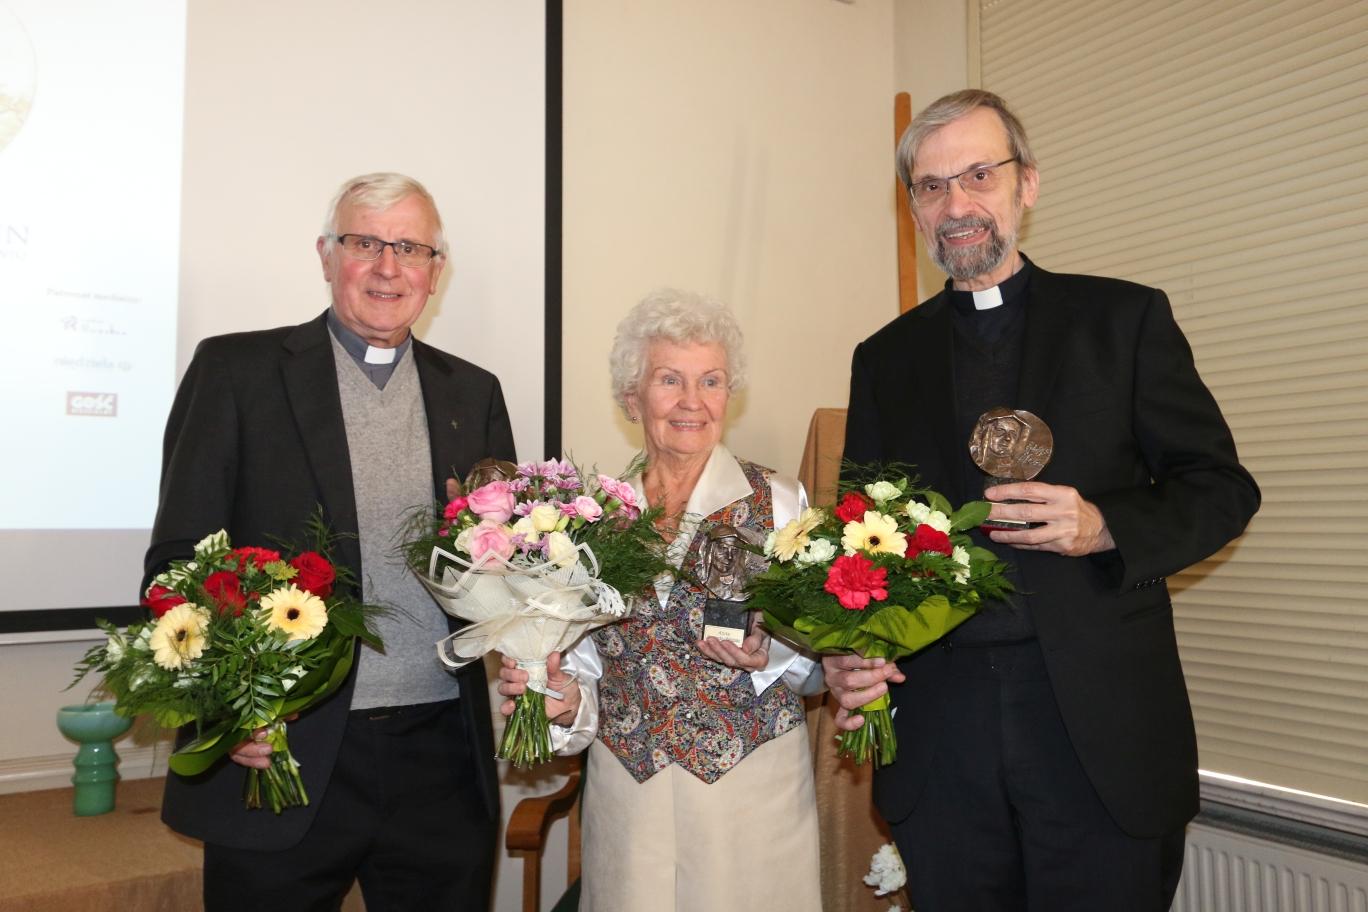 Für seine Erinnerungsarbeit in der Gedenktstätte Oświęcim (Auschwitz) hat Pfarrer Manfred Deselaers (r.), Priester des Bistums Aachen, den Edith-Stein-Preis erhalten. Außerdem ausgezeichnet wurden Prof. Jerzy Machnacz und Anita Czarniecka–Stefańska.